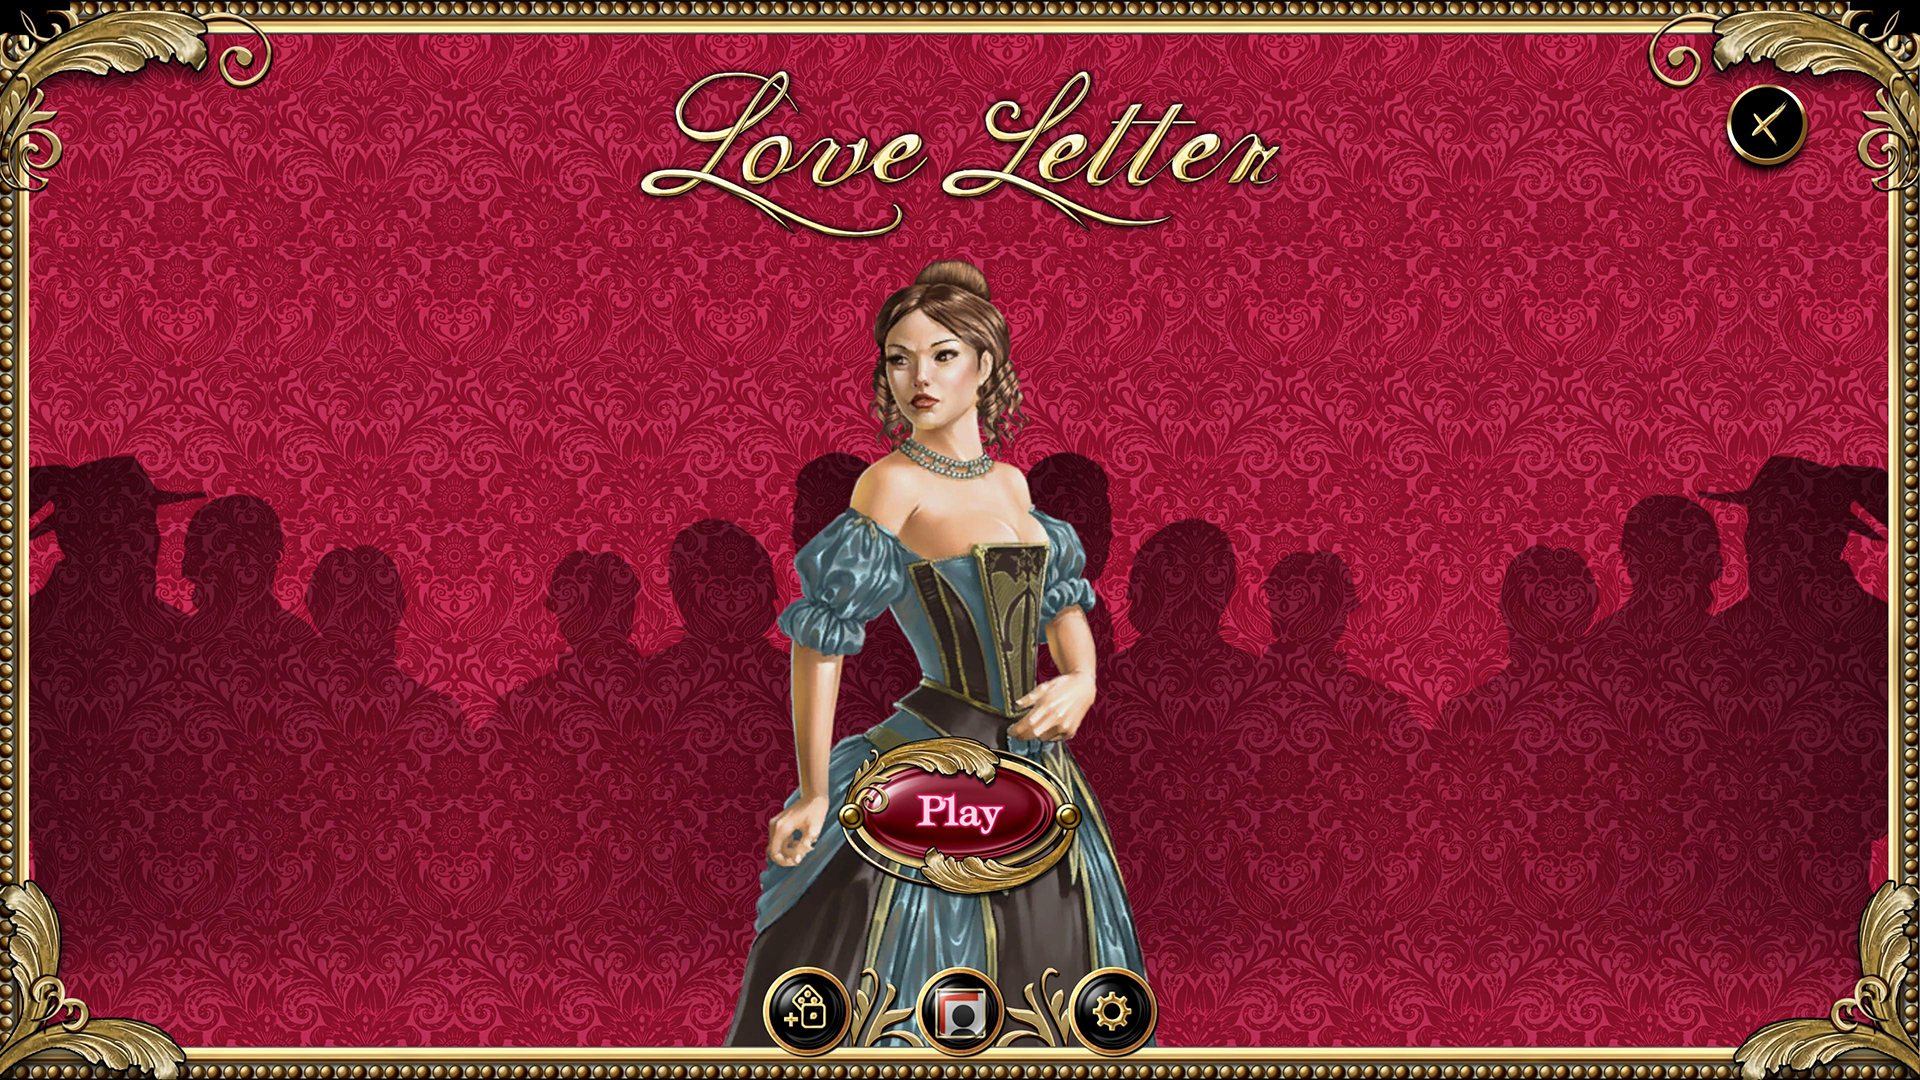 Love Letter Steam CD Key [USD 0.26]